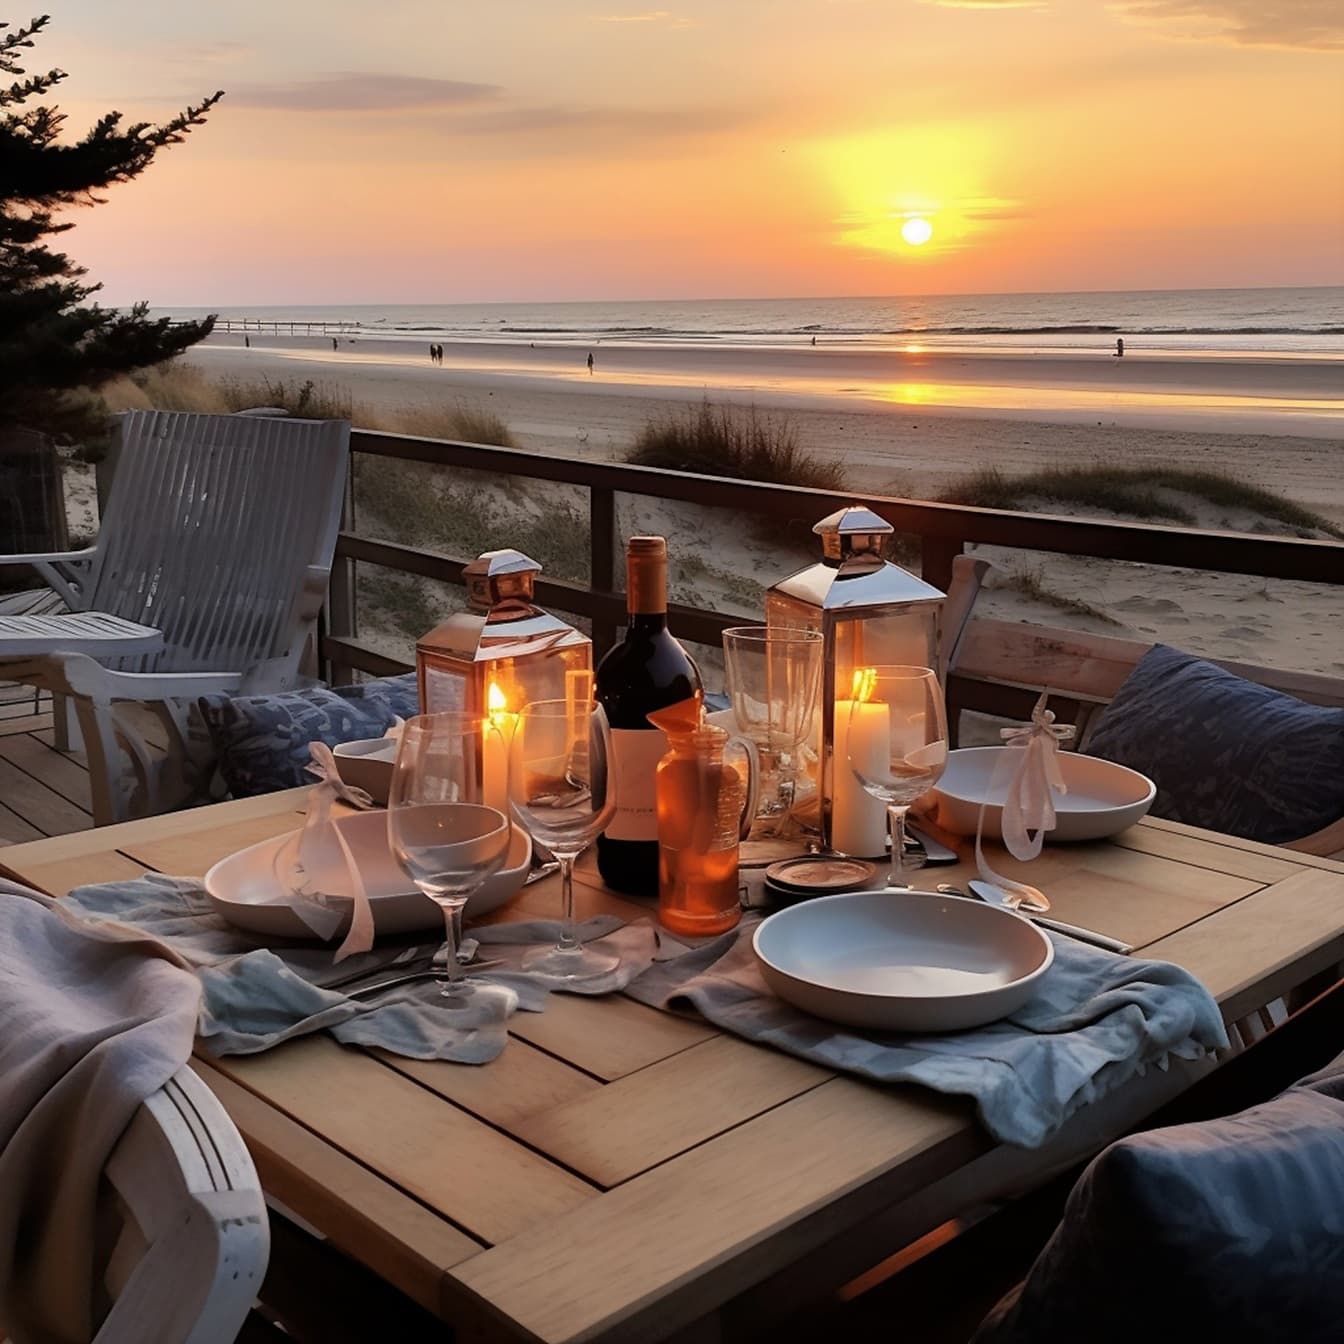 Romantische dinerlijst met rode wijn en kaarsen in restaurant aan het strand